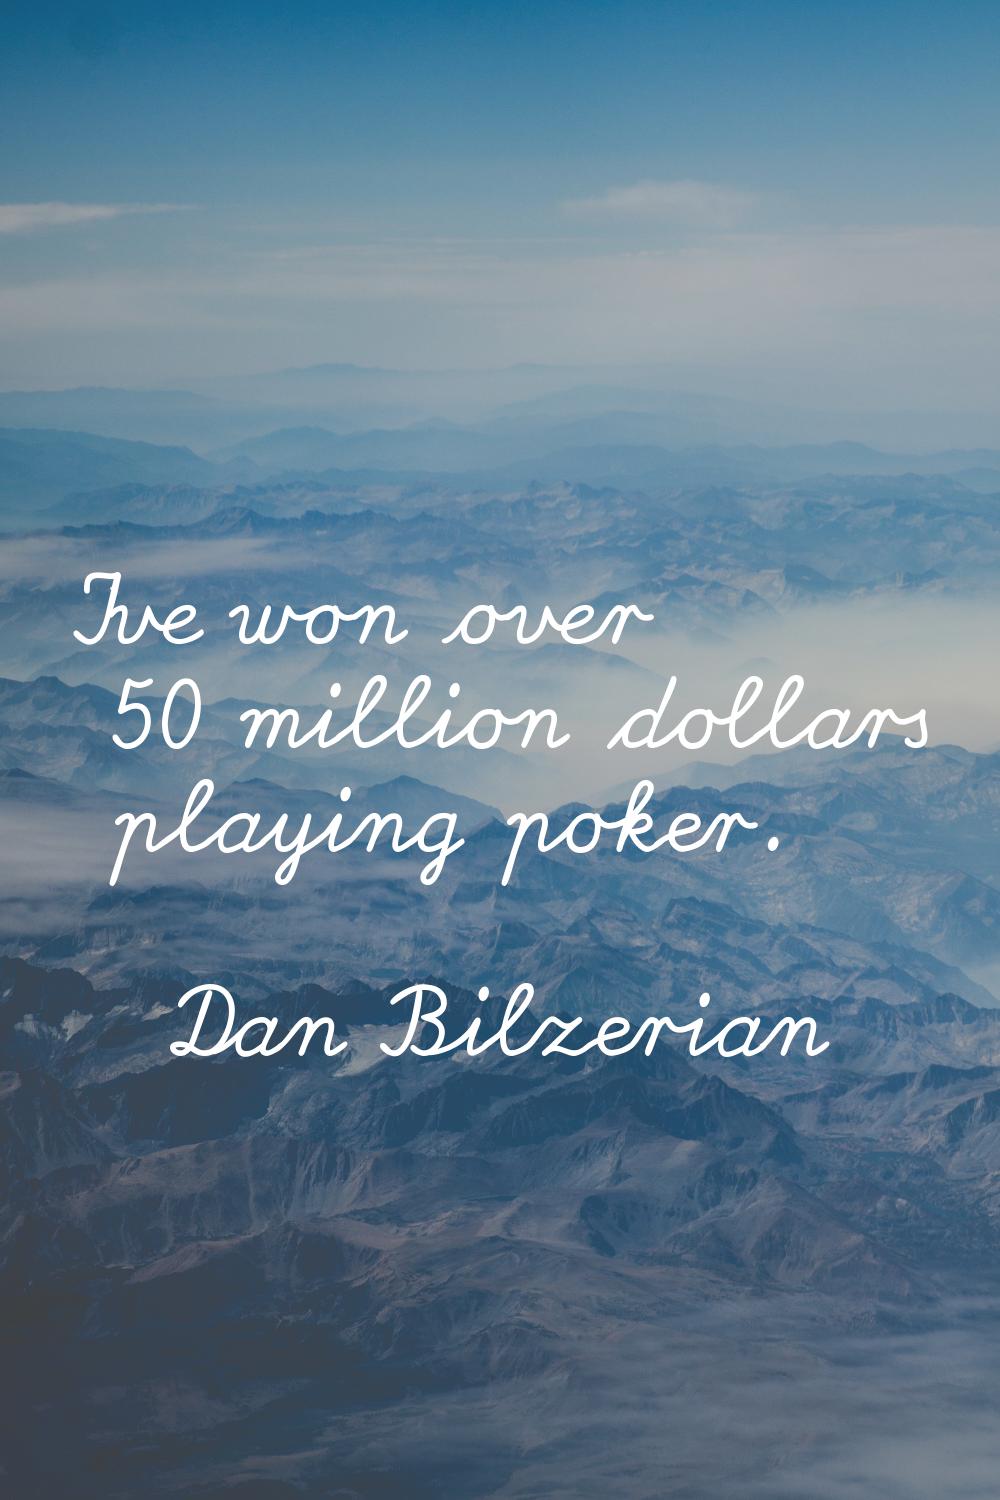 I've won over 50 million dollars playing poker.